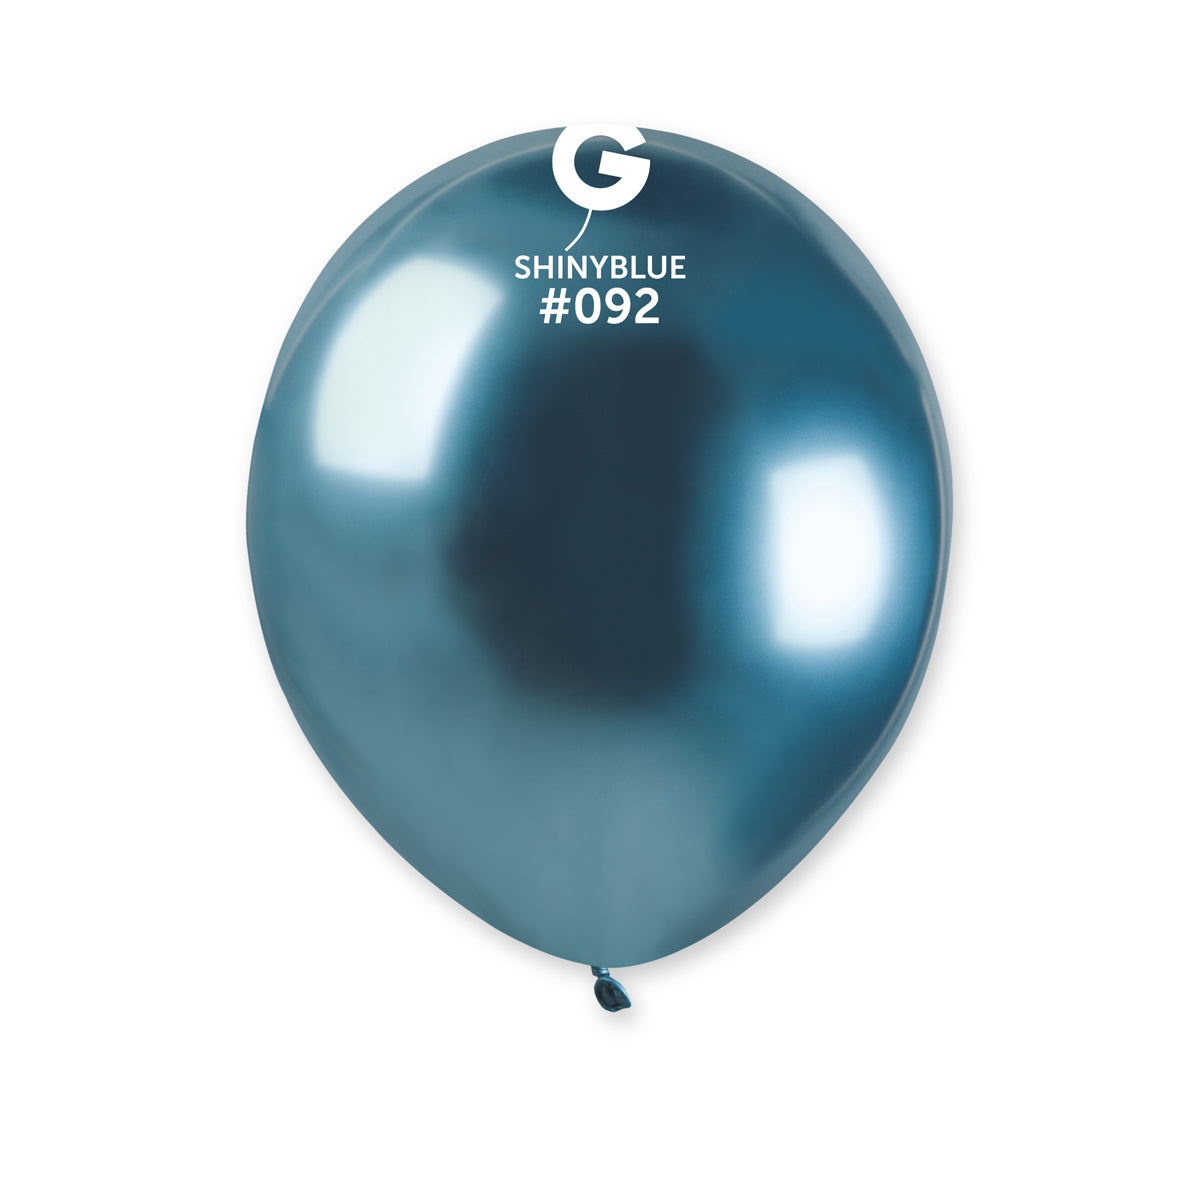 Ruban de ballon - Ficelle de ballon – Helium Balloon Inc.